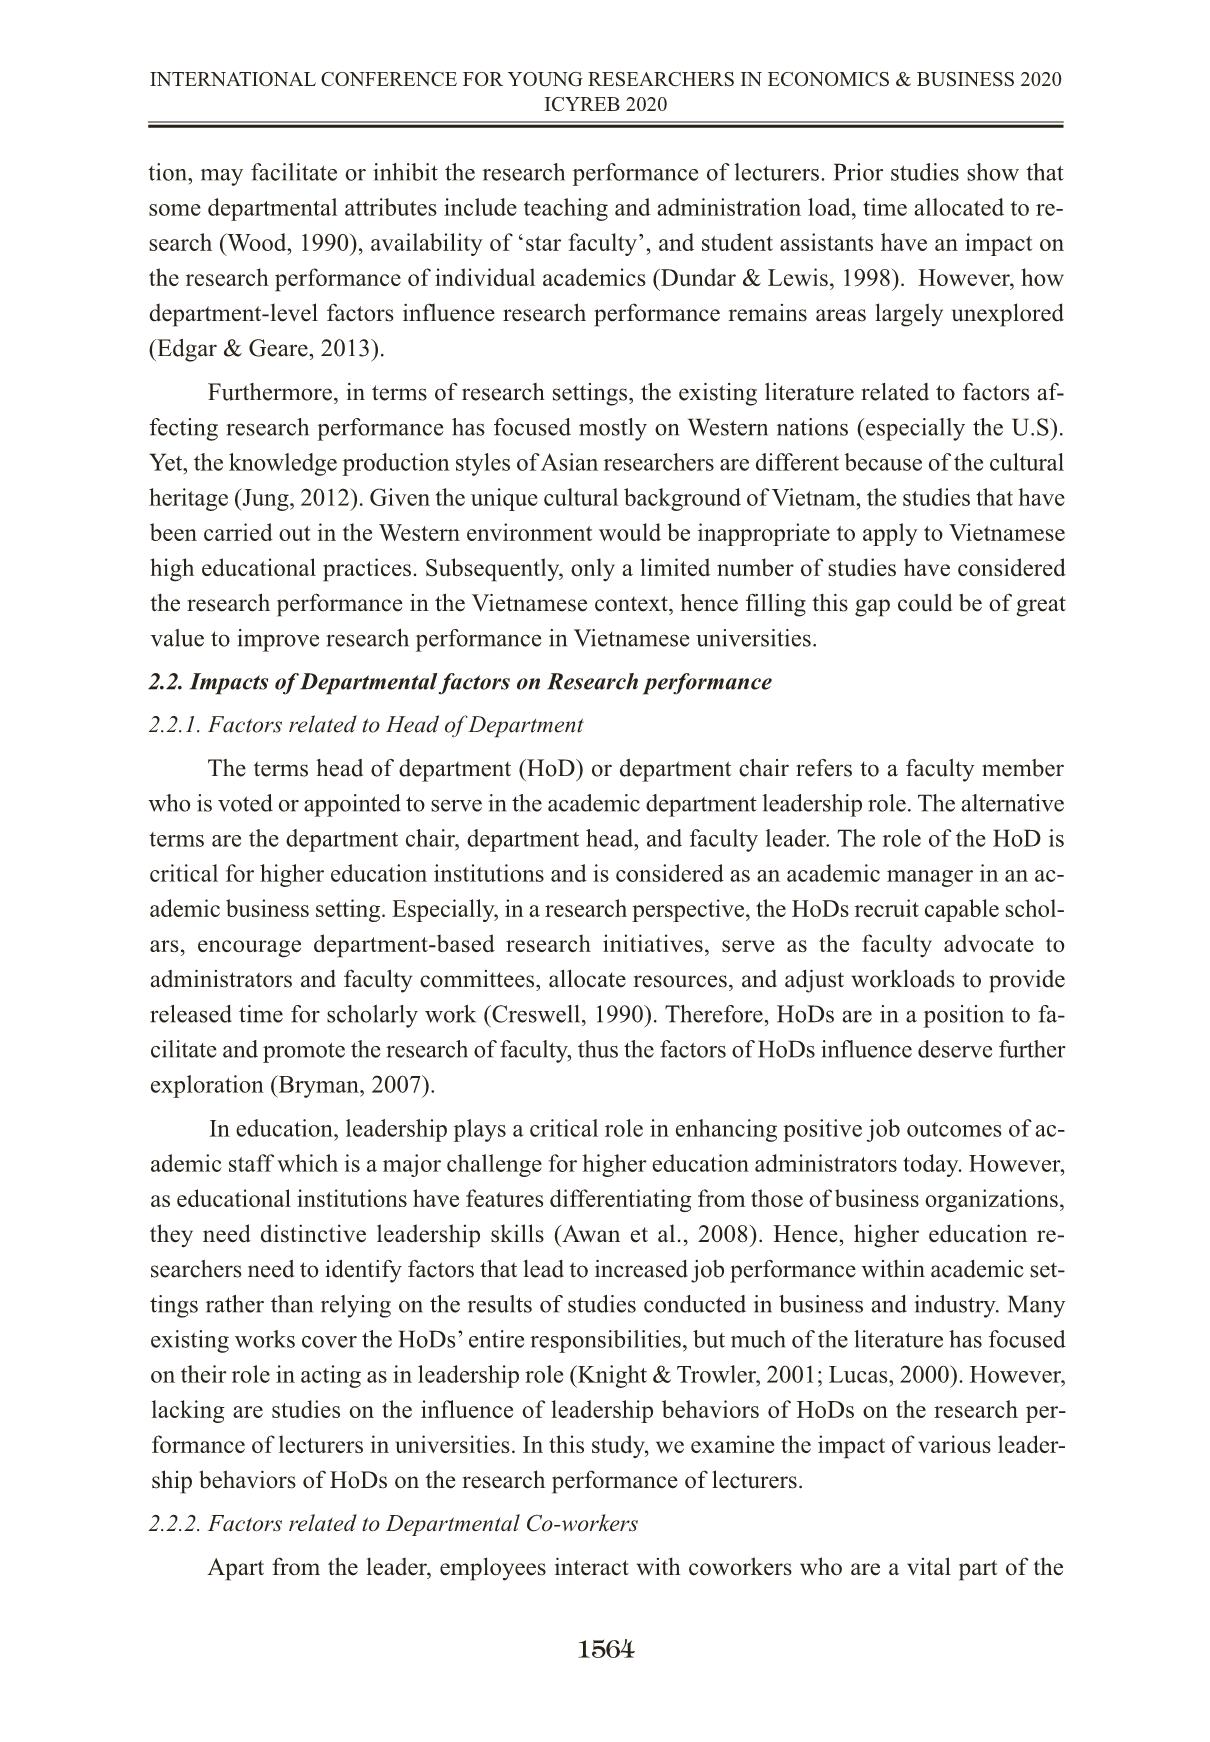 Tác động của các yếu tố cấp bộ môn đến hiệu quả nghiên cứu khoa học của giảng viên: Nghiên cứu thực nghiệm tại Việt Nam trang 4